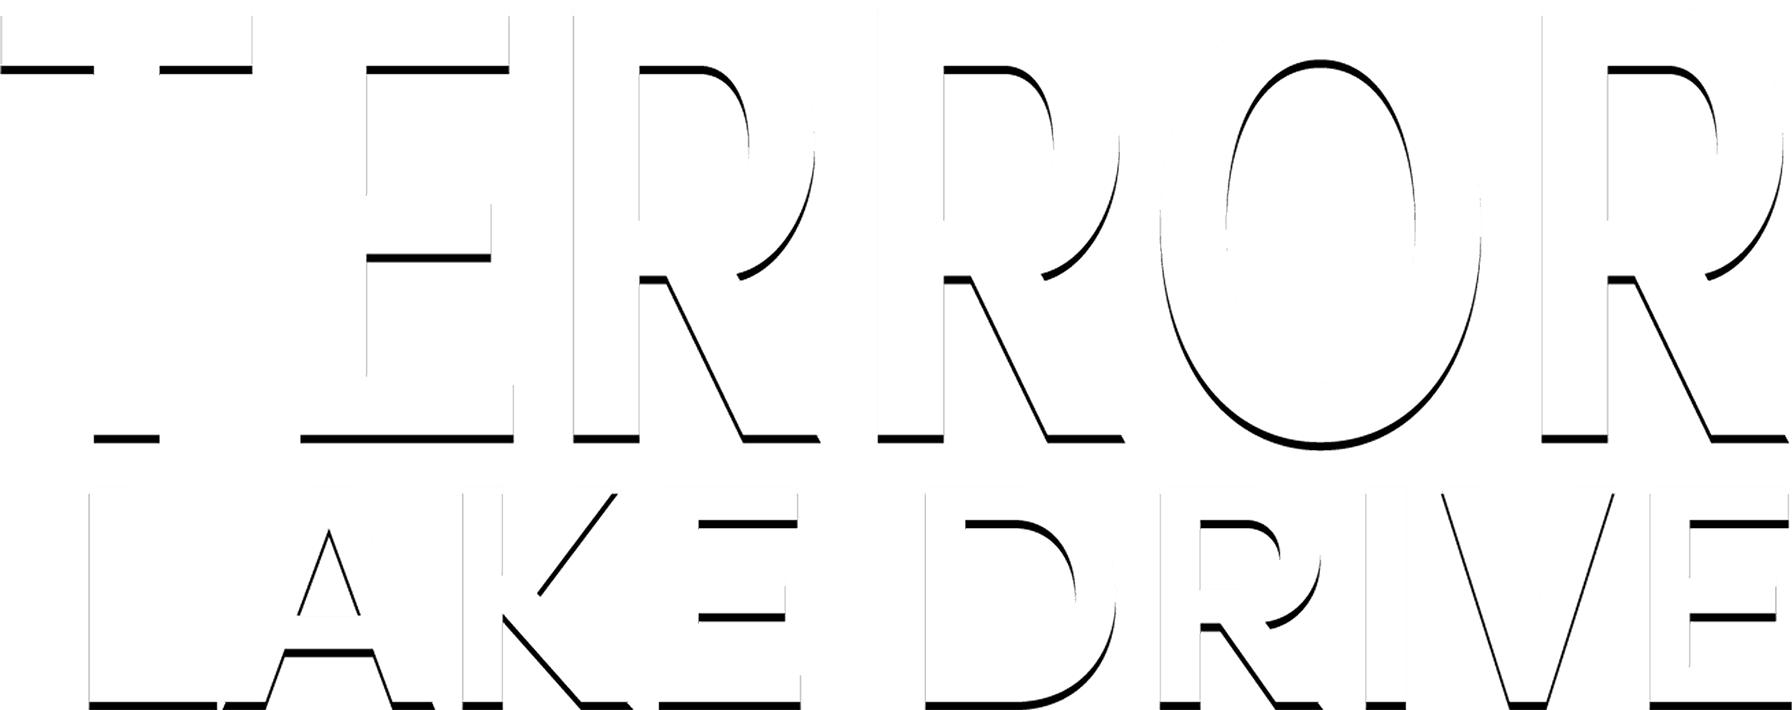 Terror Lake Drive logo